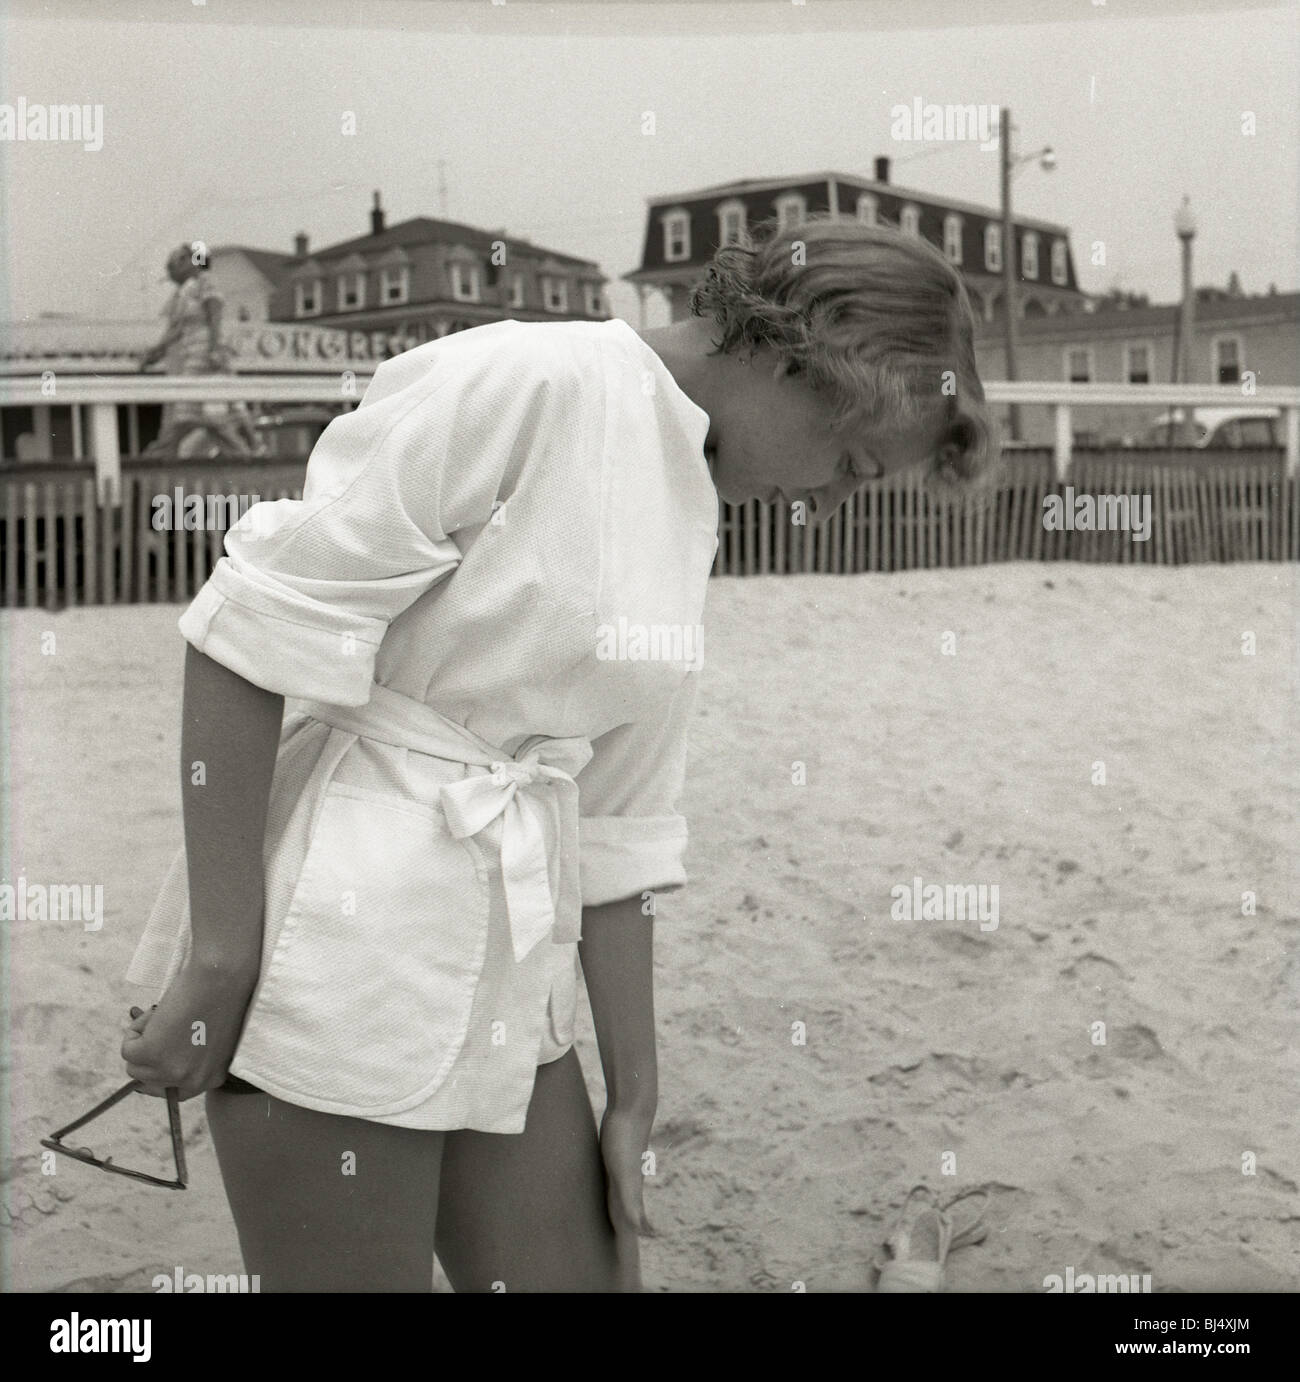 Mode femme à la plage durant les années 50. Conseil mode soleil océan atlantique à pied Banque D'Images